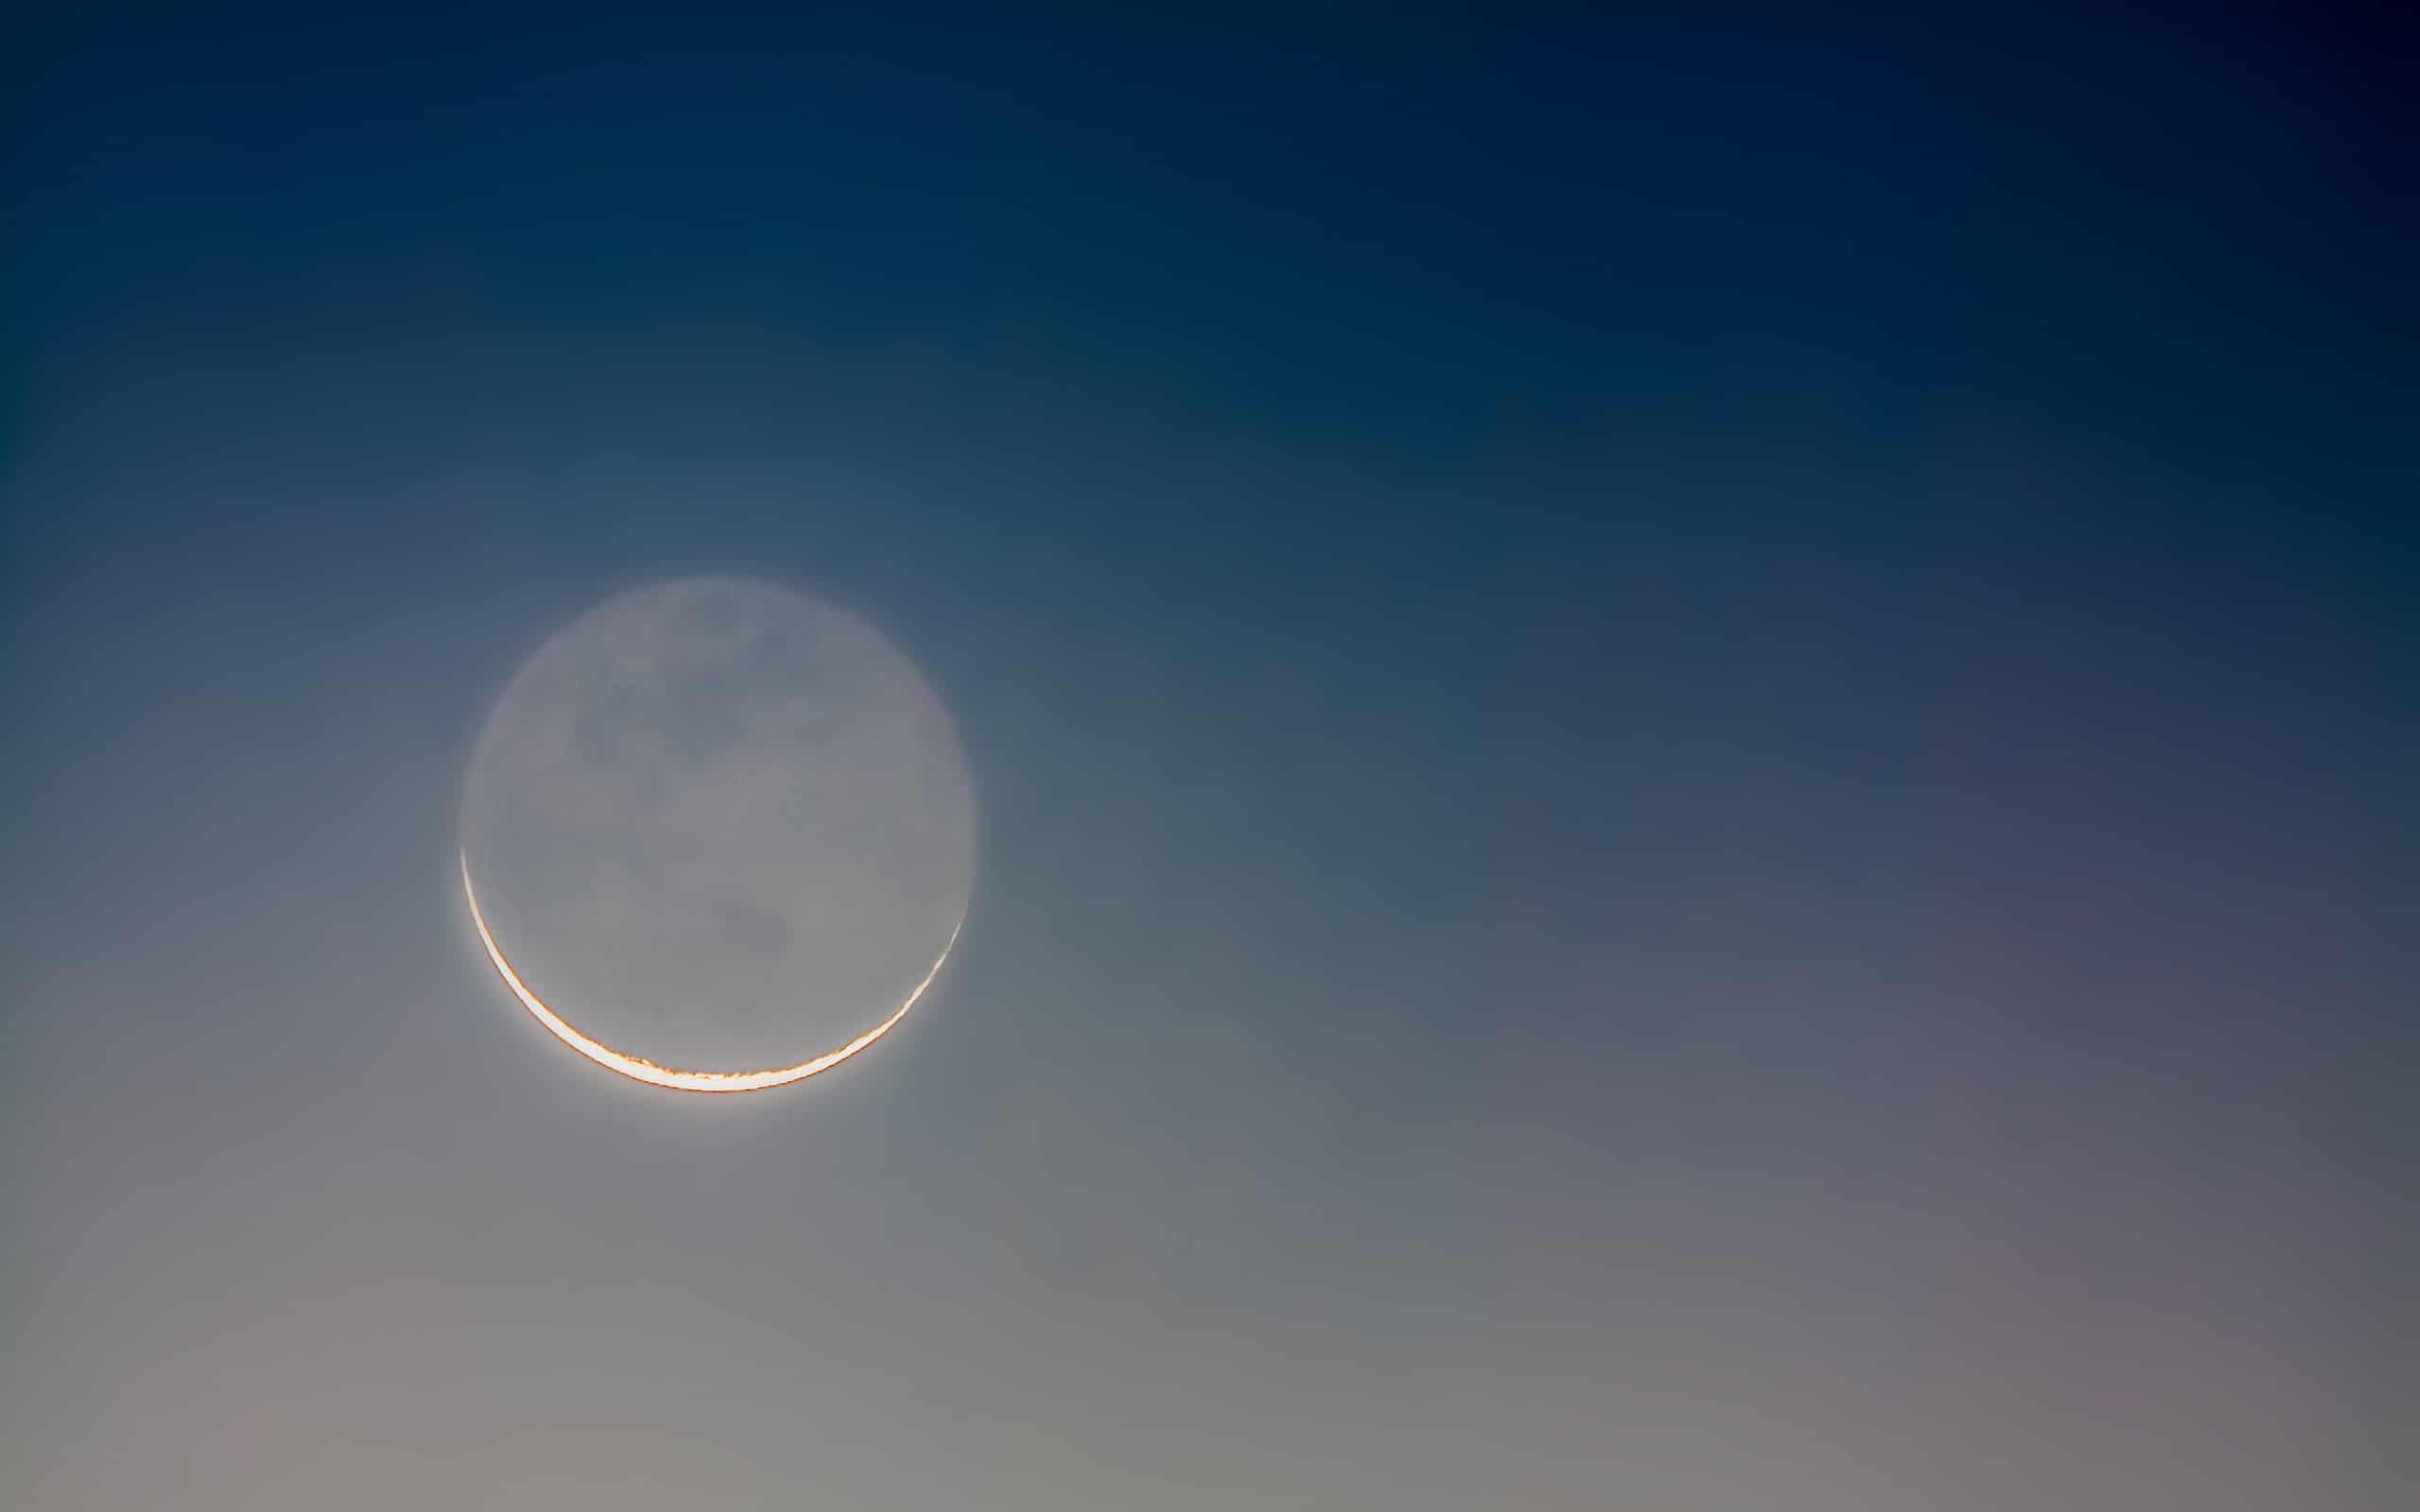 Earthshine on crescent moon